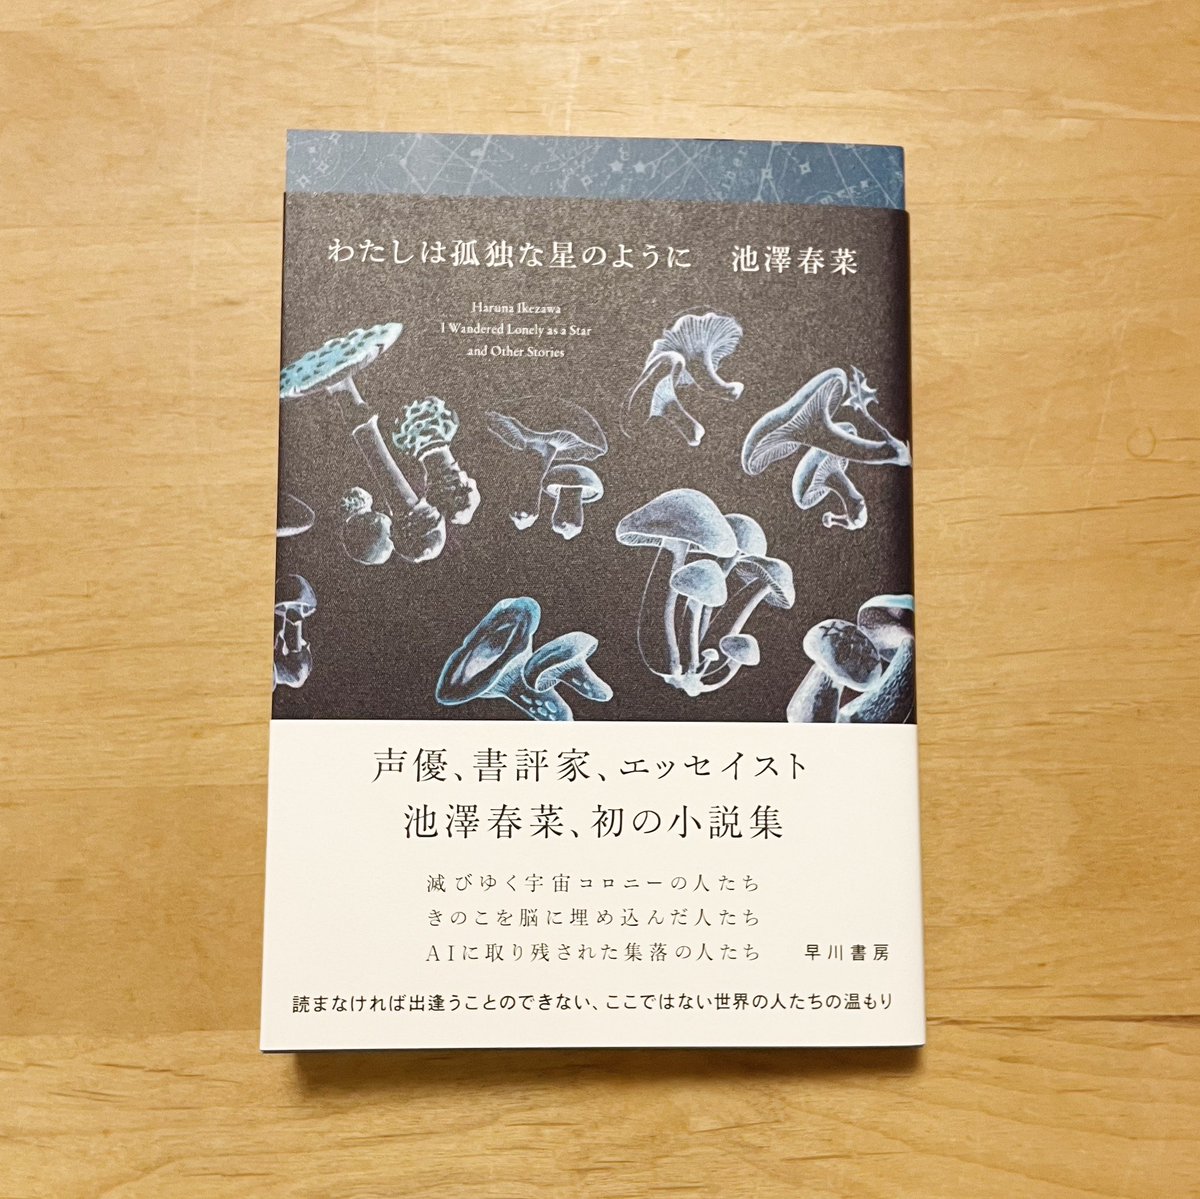 大変に美しい本が届きました。 大事に、まずはズバッと一気読みしたいと思います。 「わたしは孤独な星のように」池澤春菜